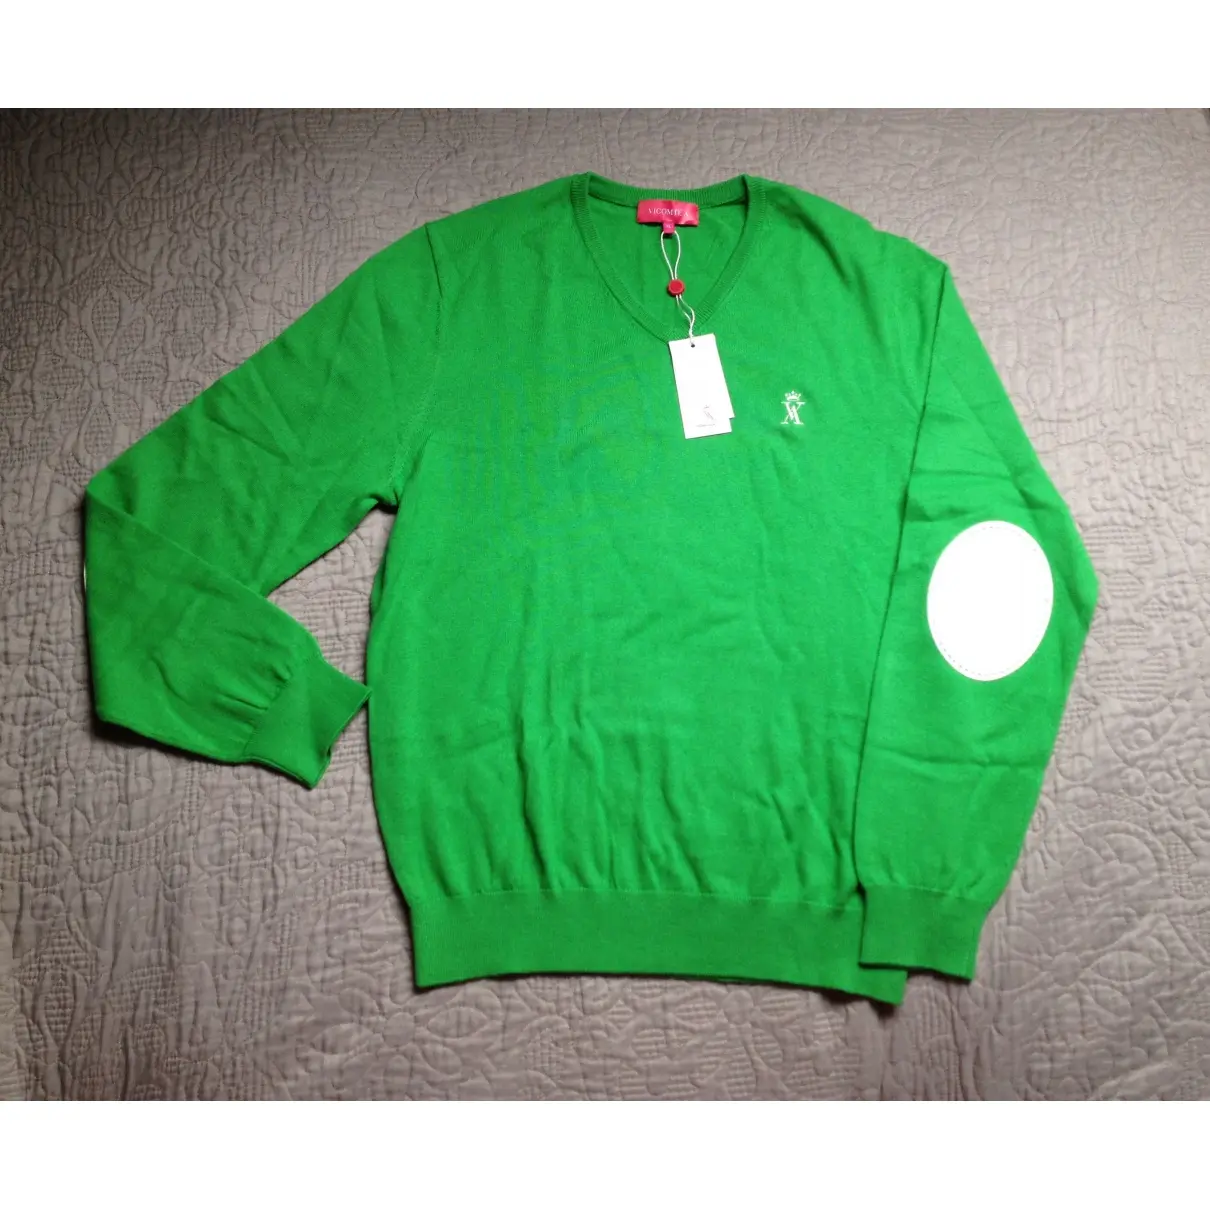 Vicomte Arthur Green Cotton Knitwear & Sweatshirt for sale